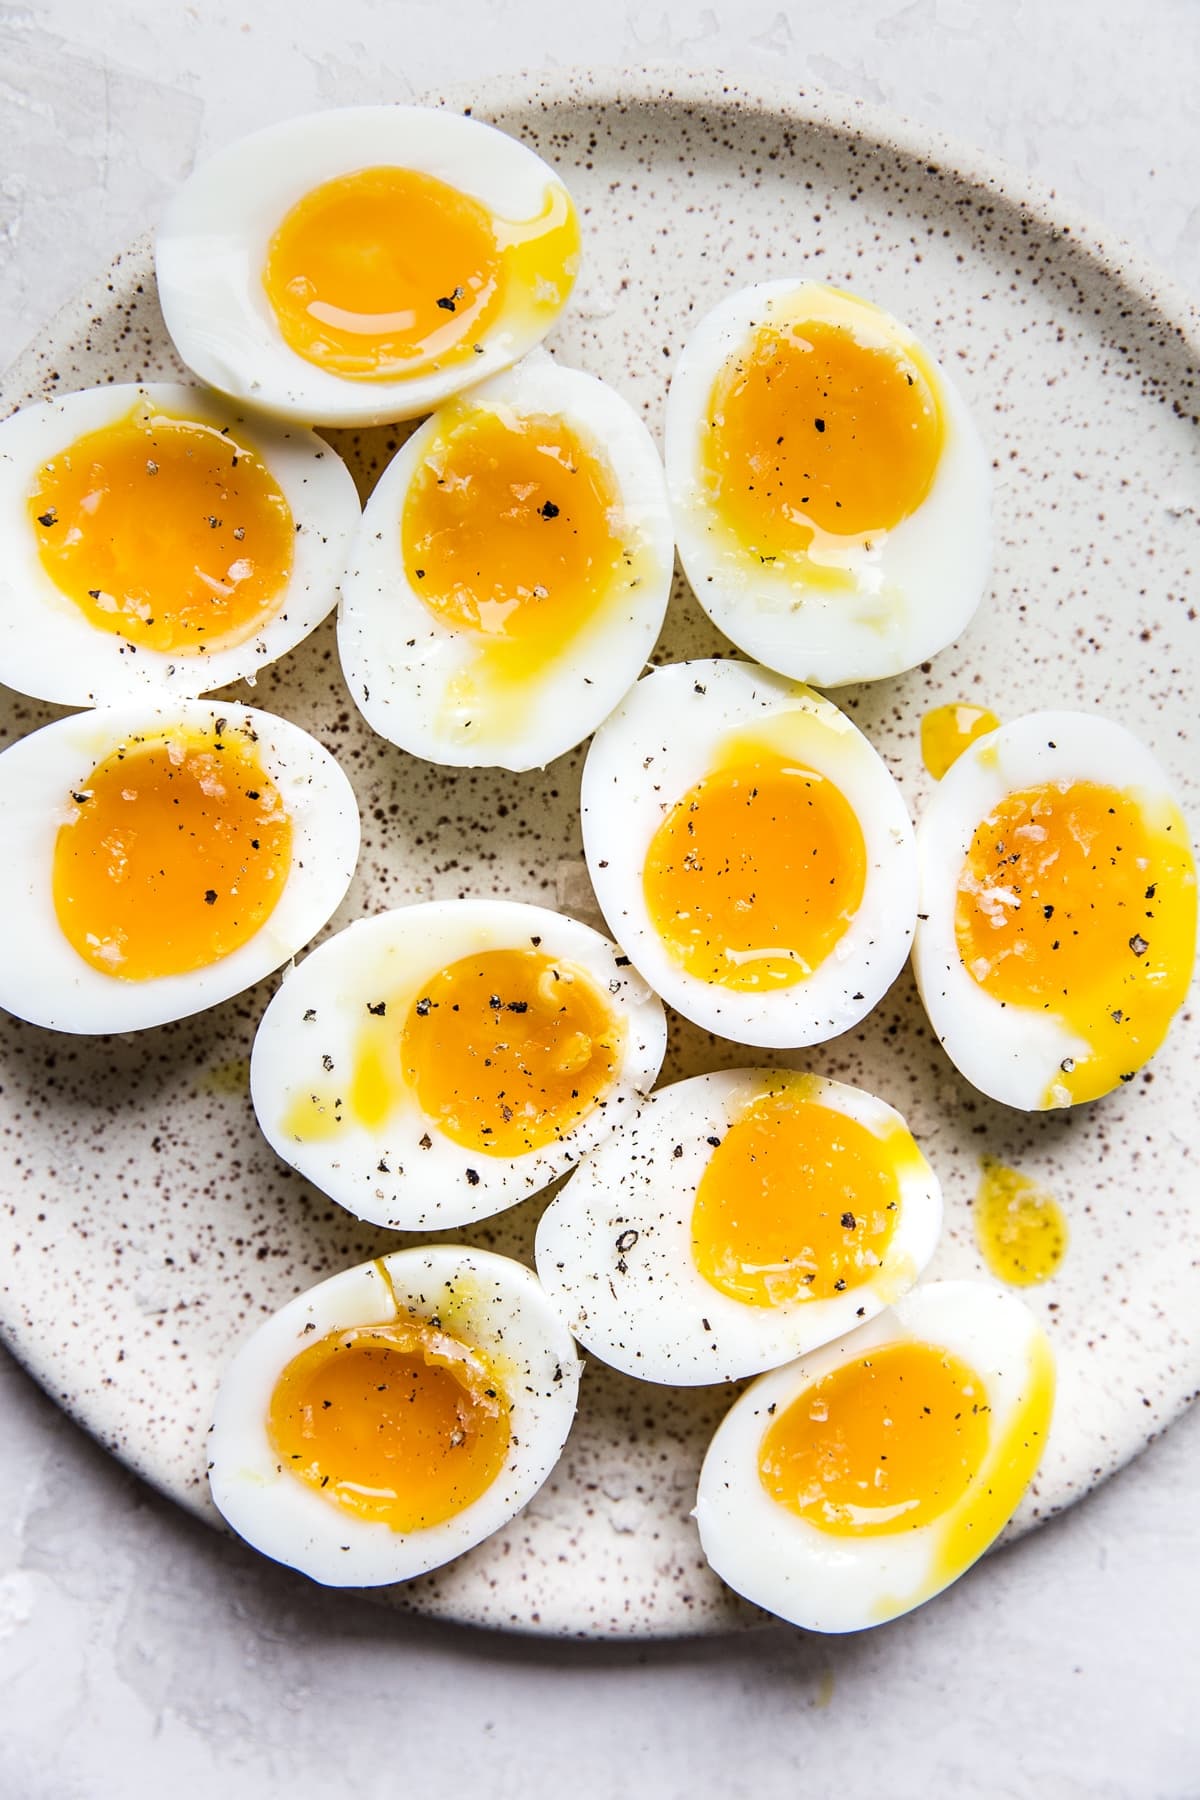 Six-Minute Eggs